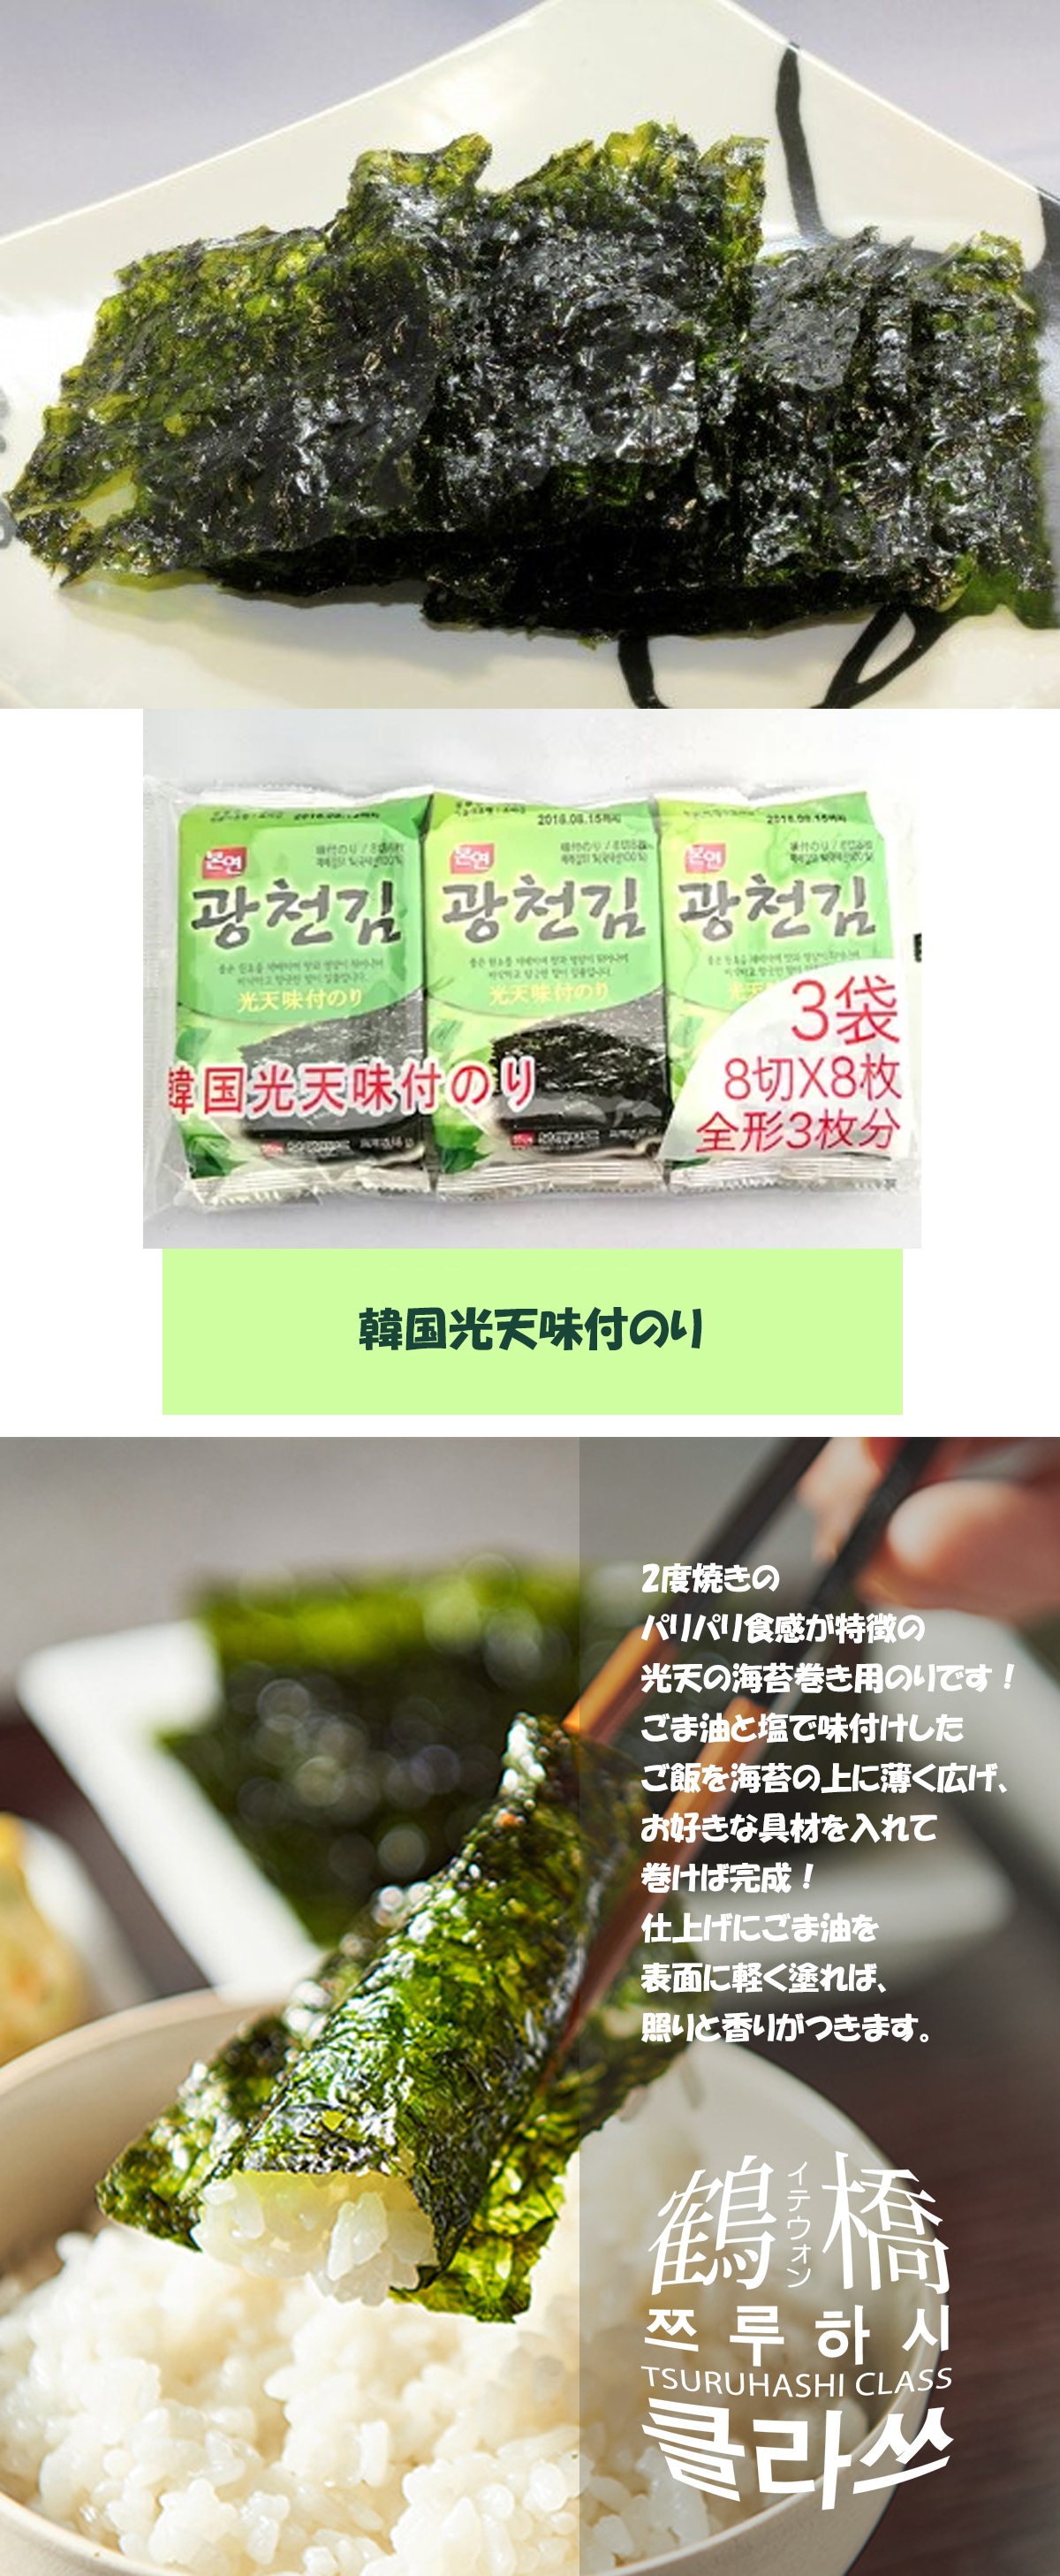 鶴橋クラスの通販 | [テプン] 韓国光天味付海苔 3P | 韓国のり/ふりかけ | 鶴橋クラス